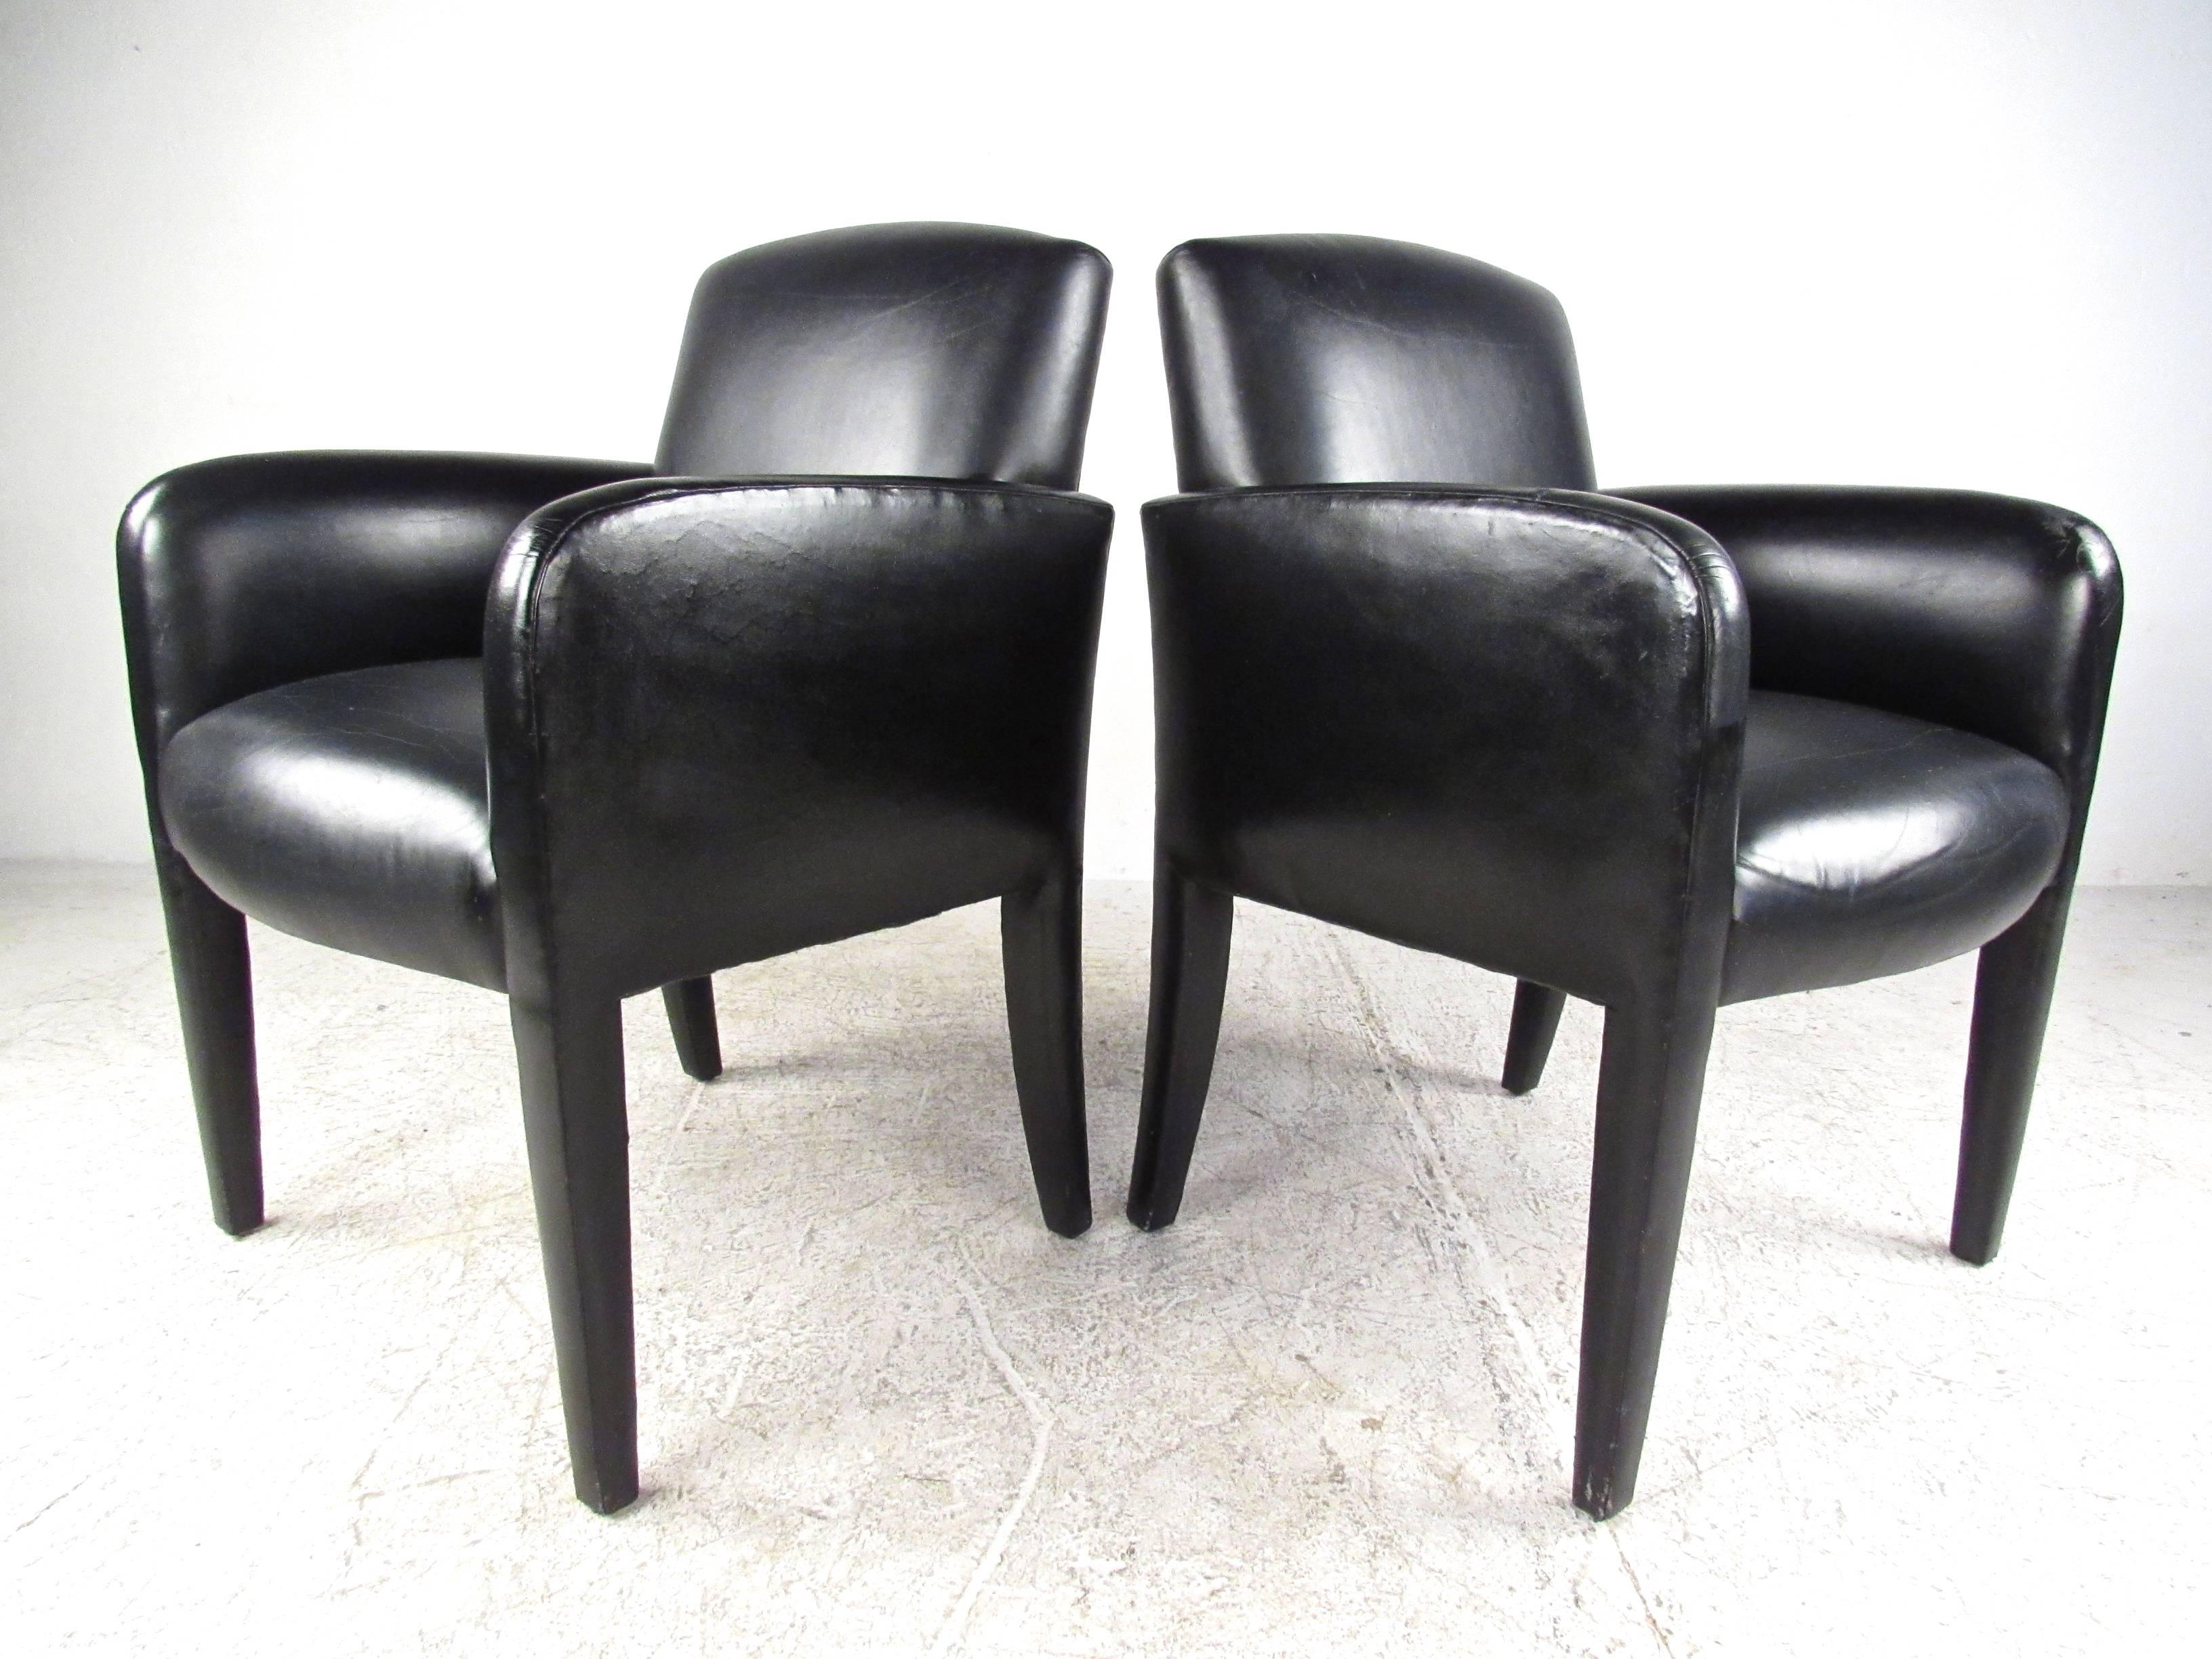 Cette paire attrayante de chaises latérales italiennes modernes est dotée d'un cadre élégant recouvert de cuir et constitue un ajout remarquable à tout espace d'assise. Un fauteuil de salon extrêmement confortable avec un rembourrage épais. Chaises